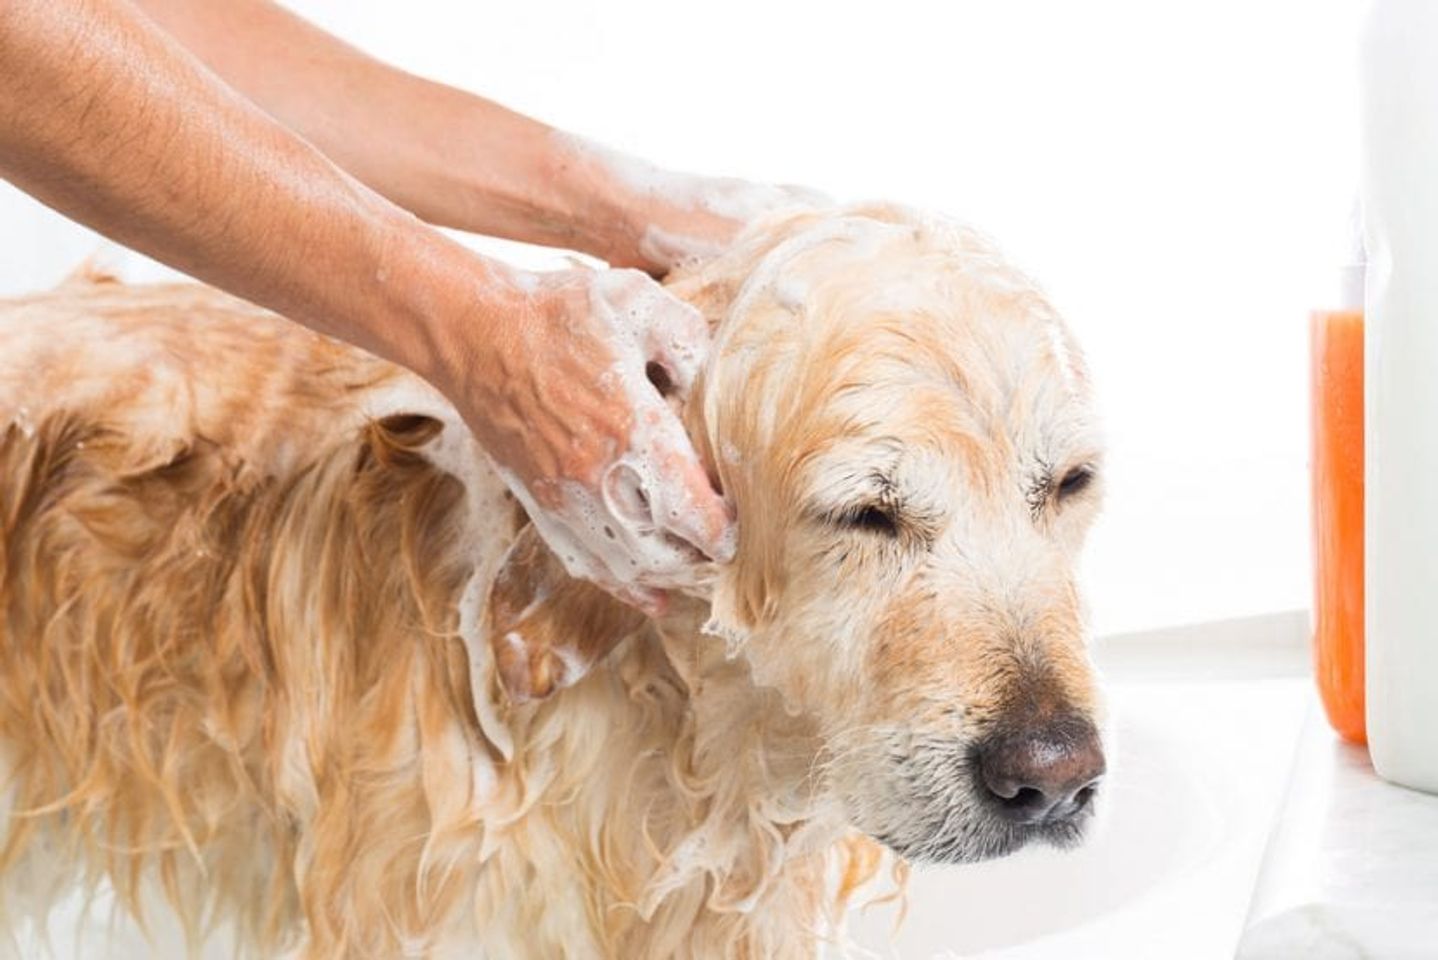 Voucher dịch vụ tắm cho chó trên 30kg theo chuẩn spa 2